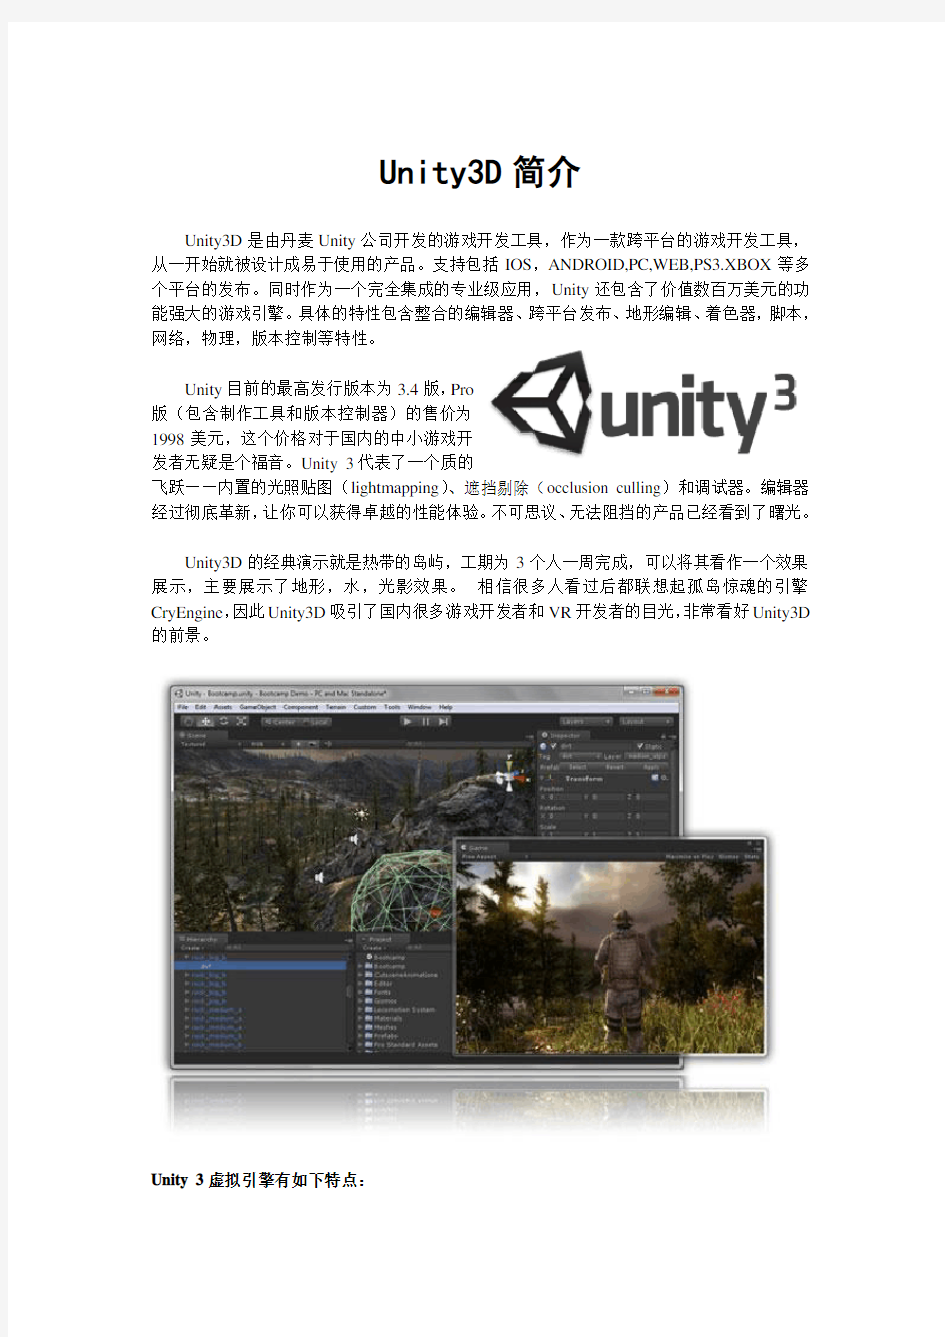 Unity3D简介